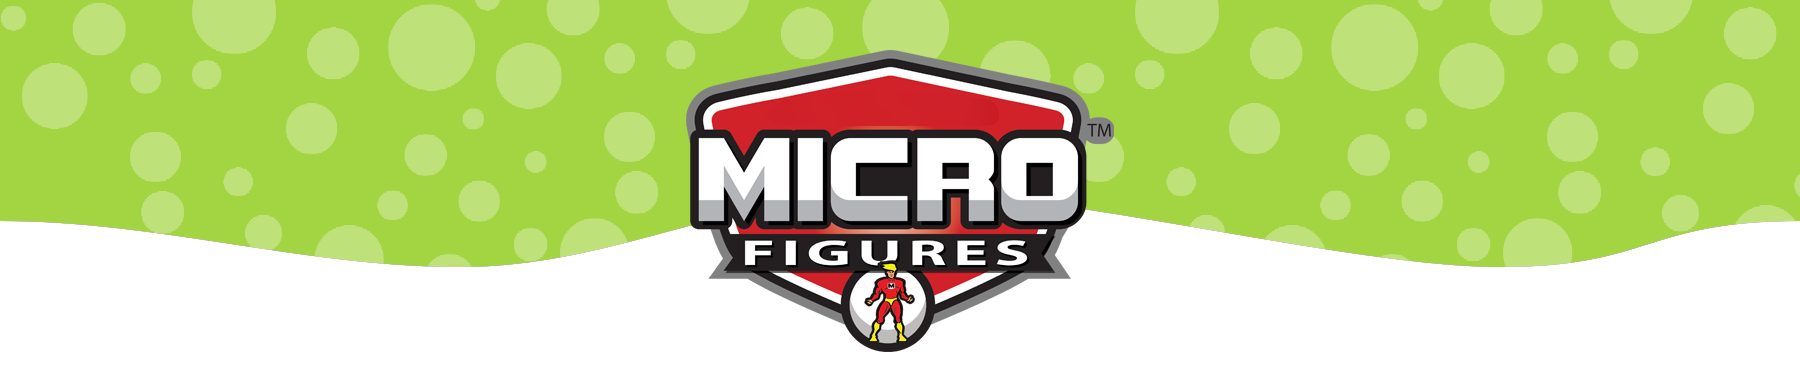 Micro figures